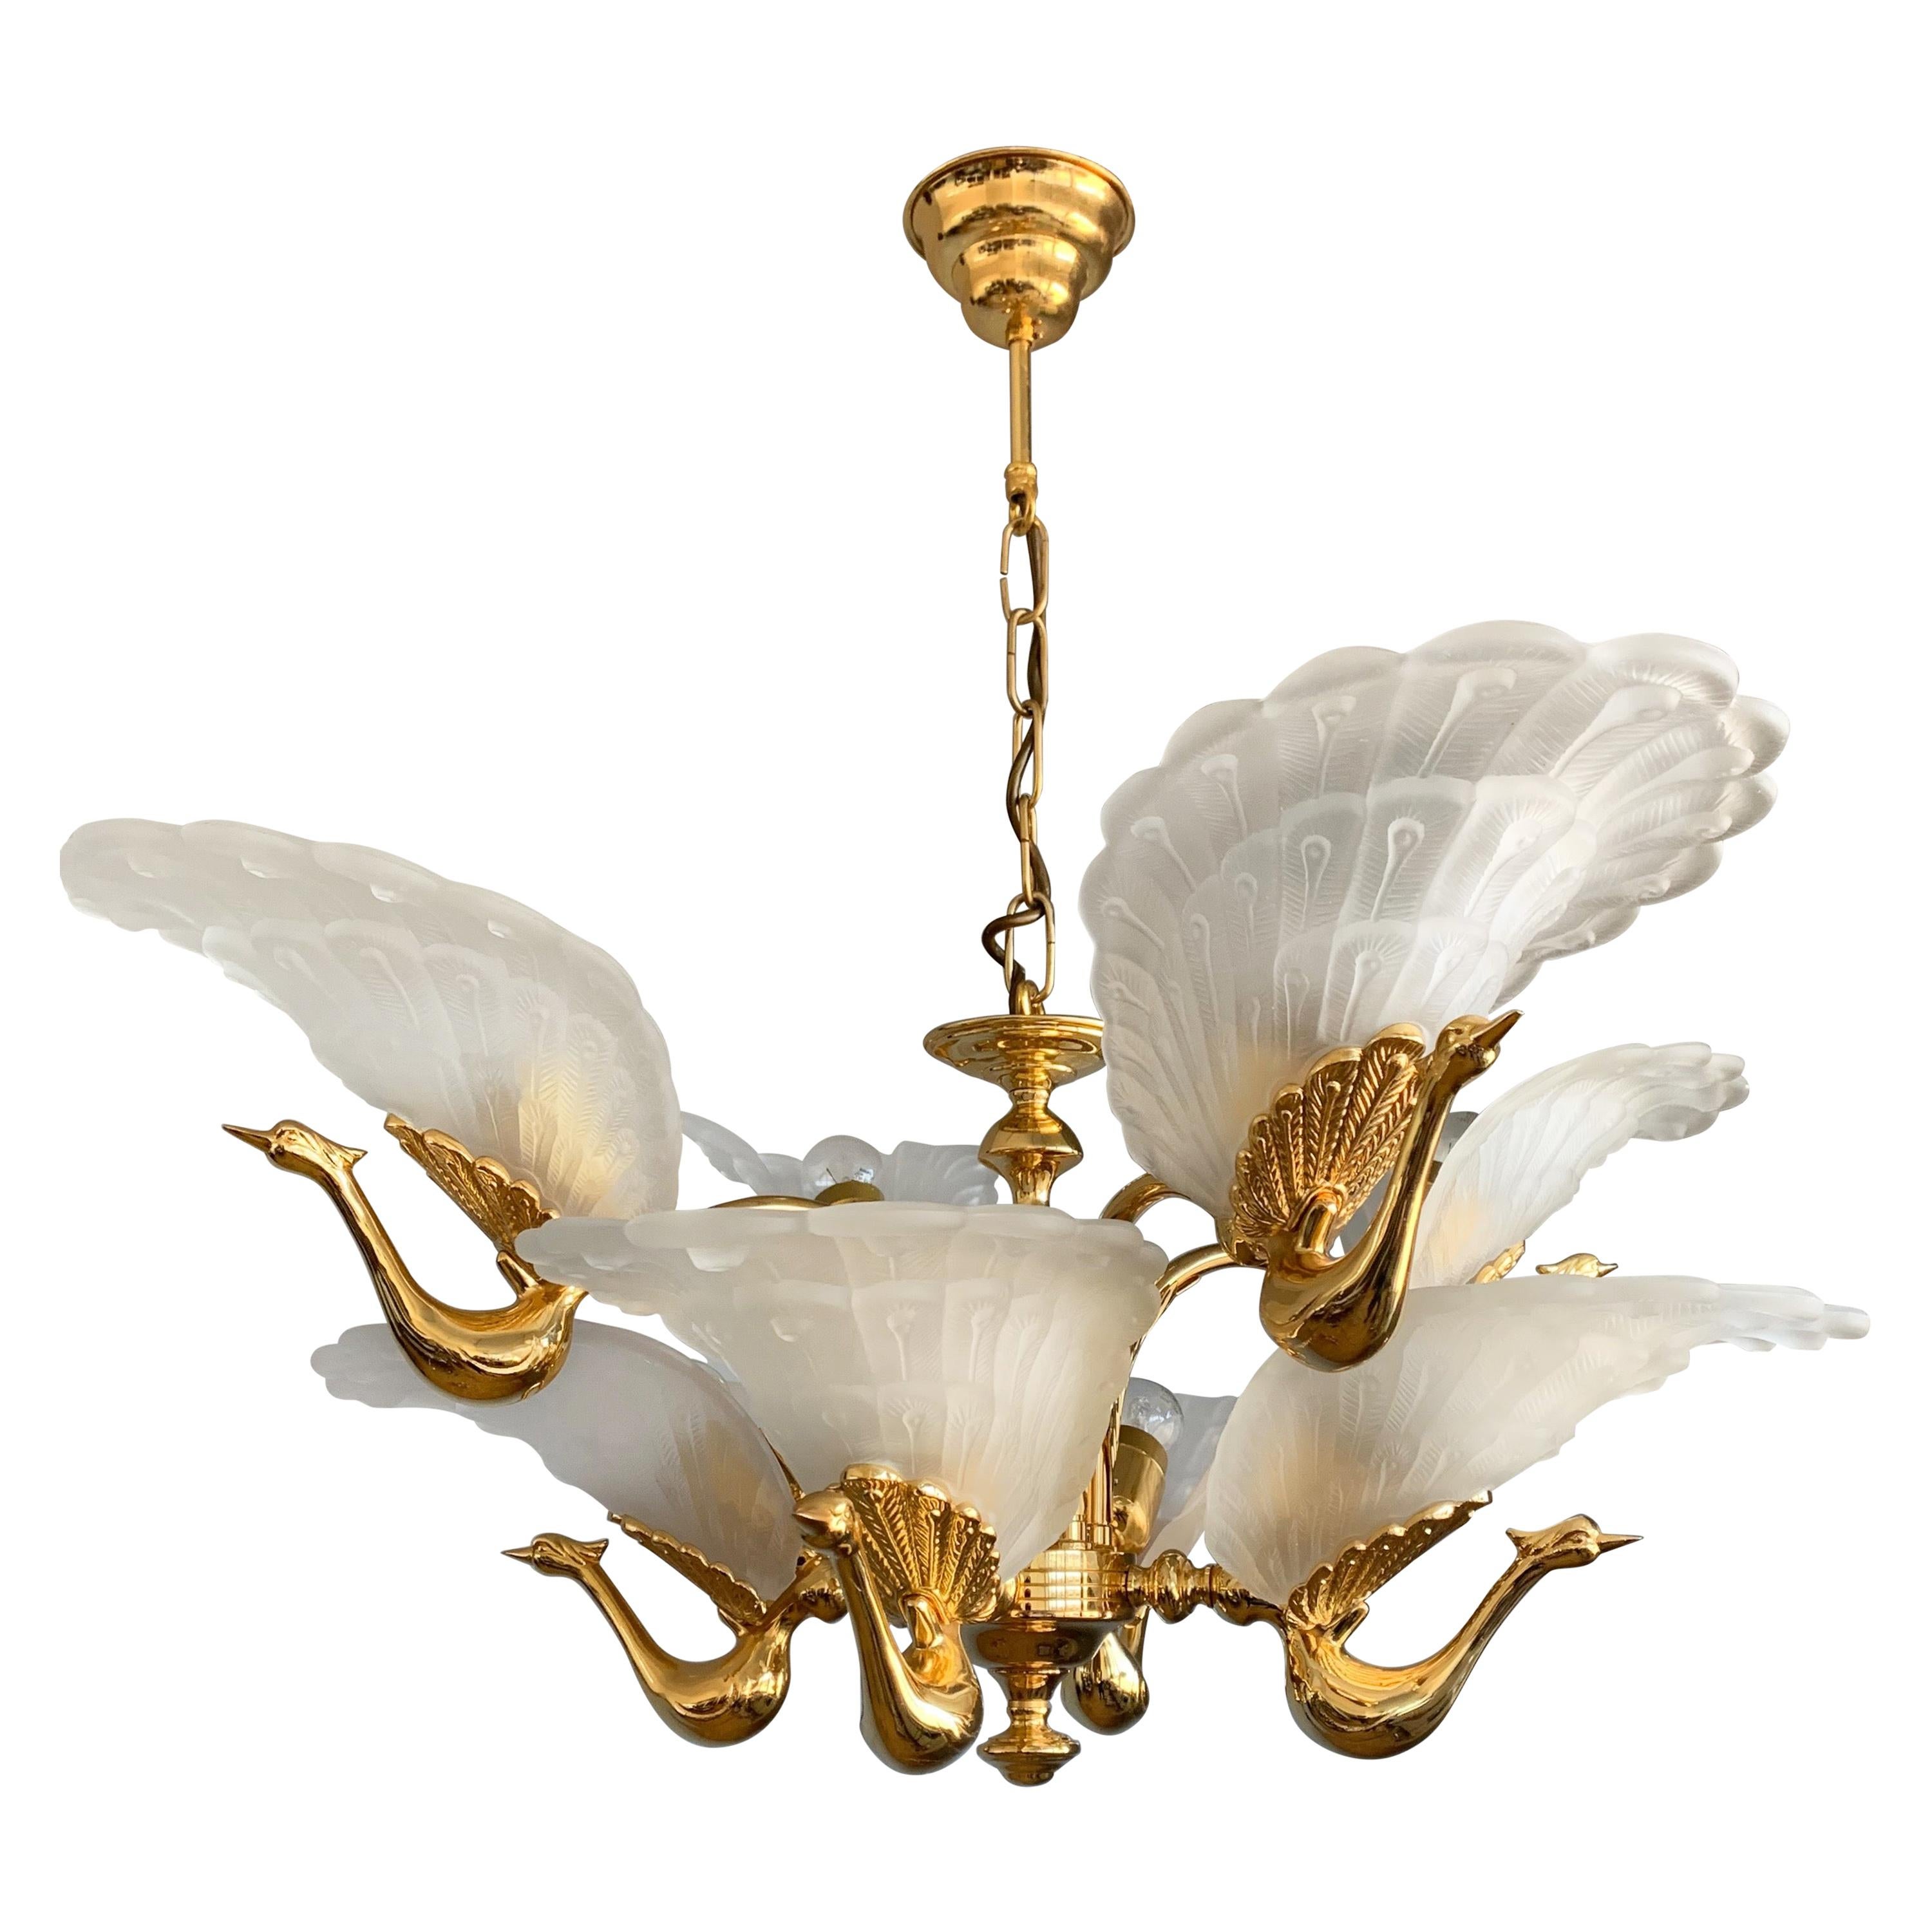 Rare Midcentury Chandelier / Pendant w. Golden Bronze & Glass Peacock Sculptures